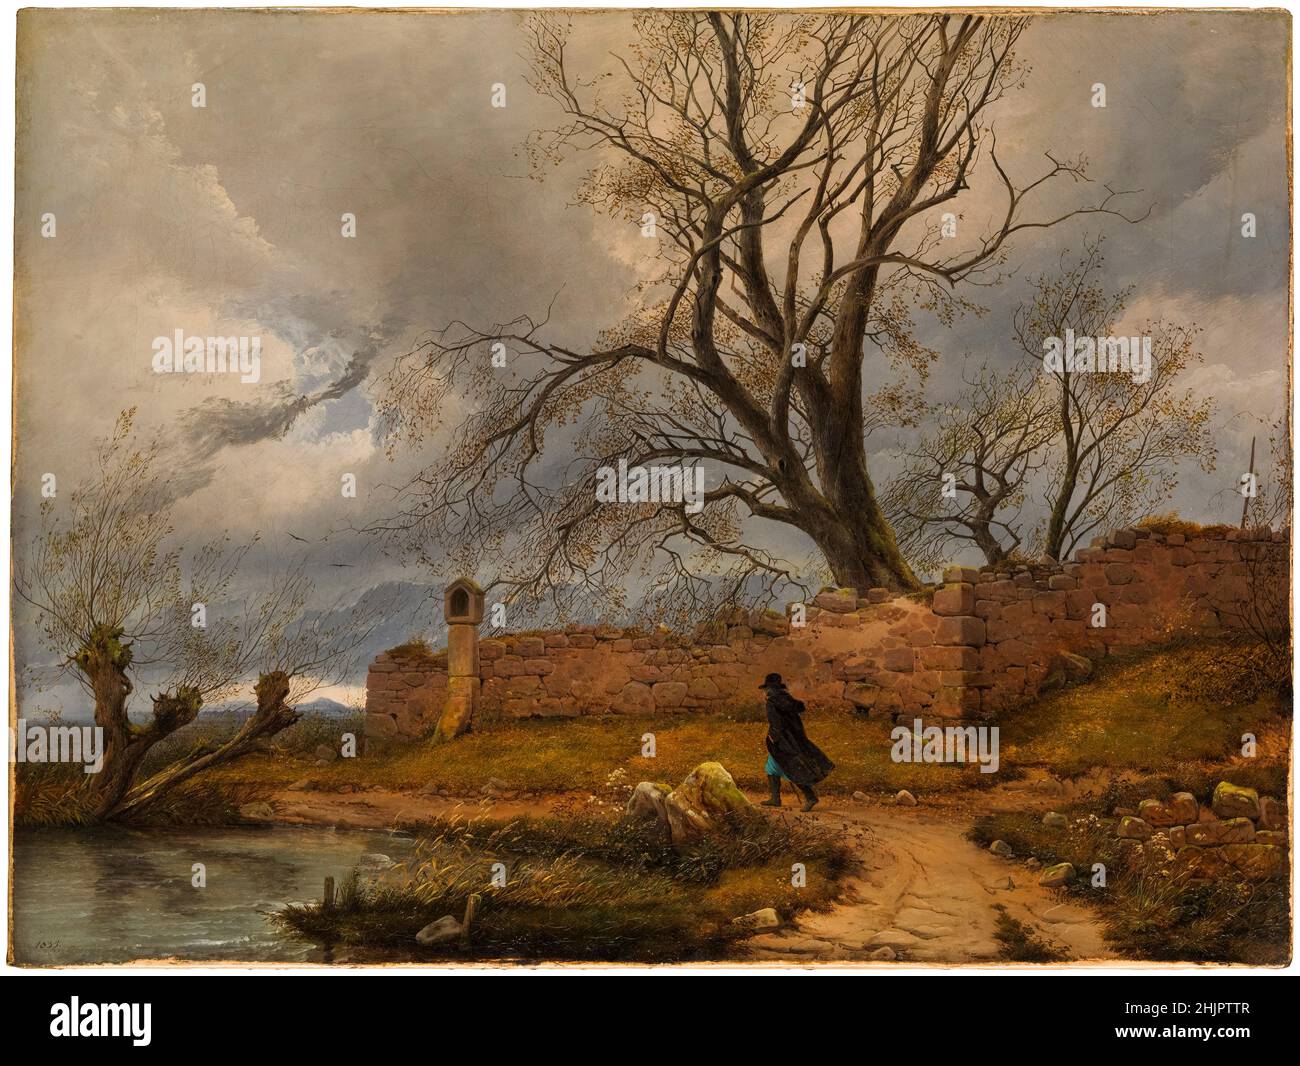 Carl Julius von Leypold, peinture de paysage, Wanderer in the Storm, 1835 Banque D'Images